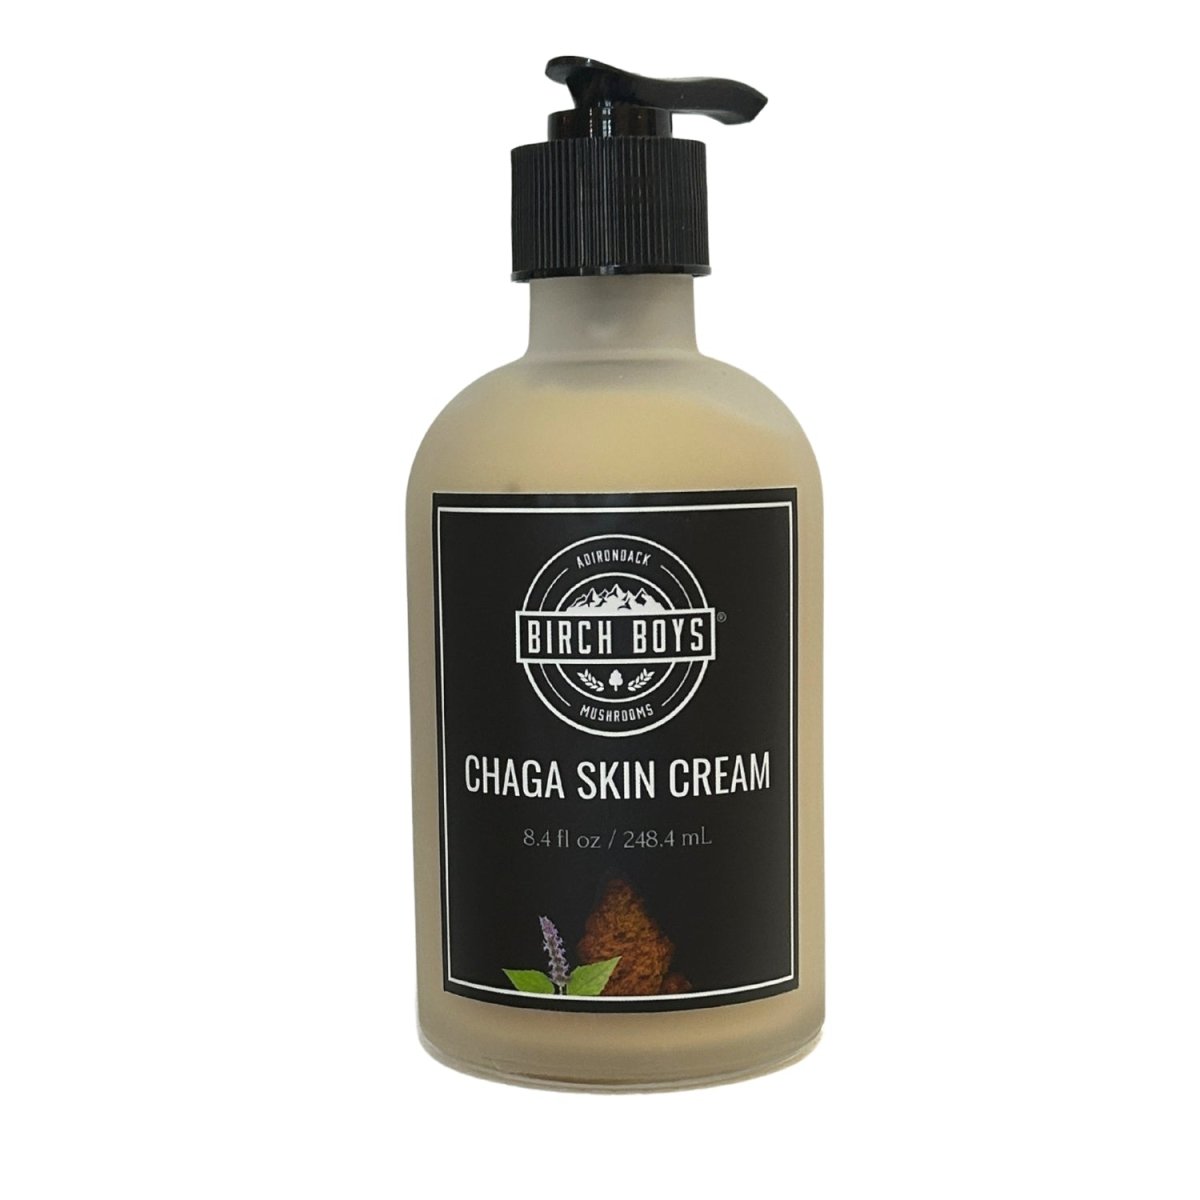 Chaga Skin Cream -  - Birch Boys, Inc.